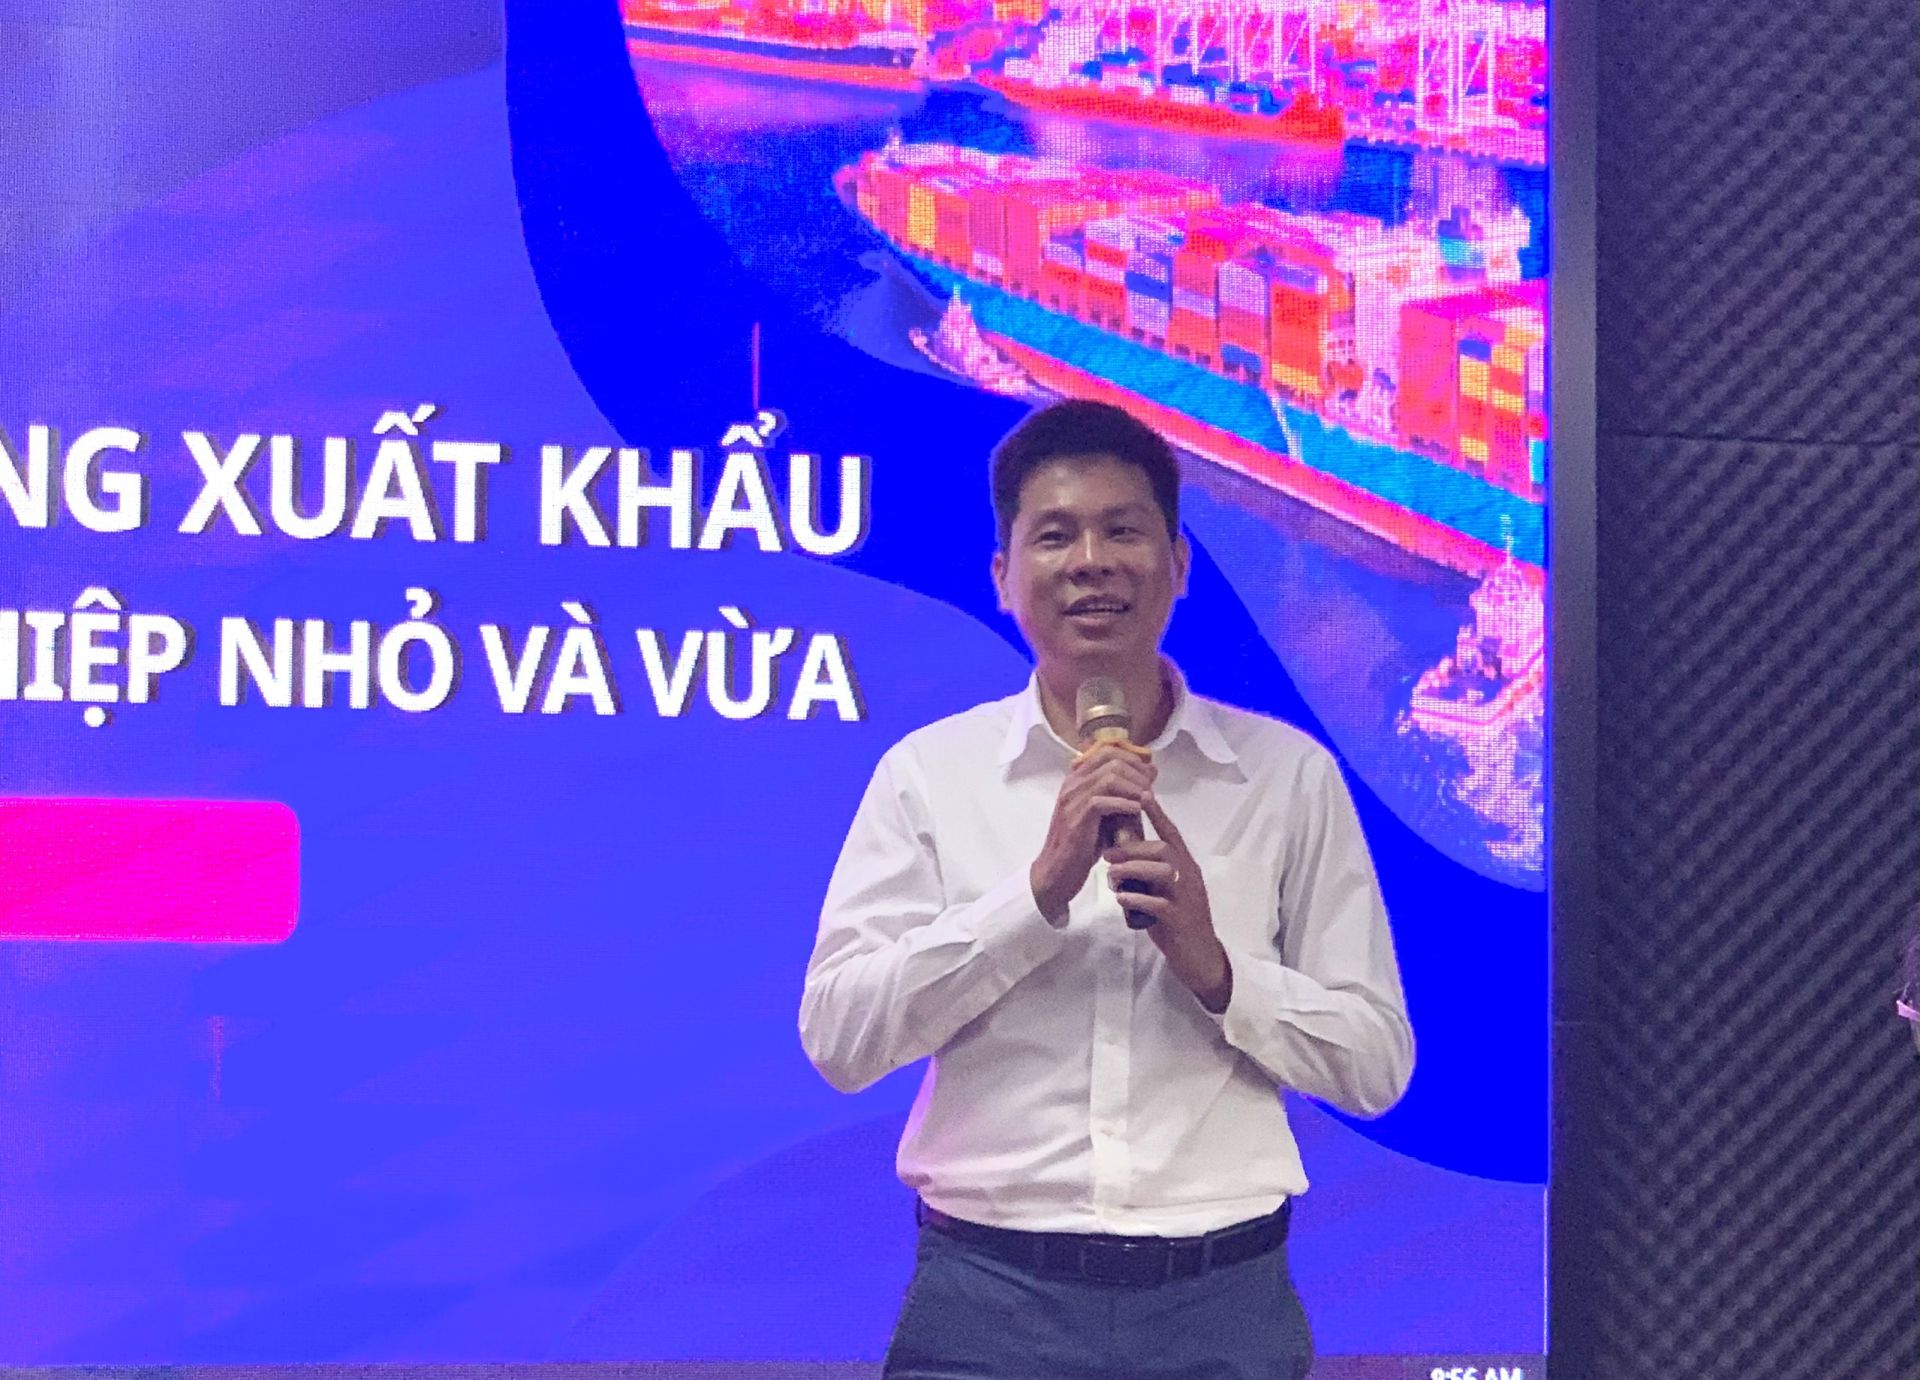 ông Vũ Thế Tùng - Giám đốc phát triển kinh doanh và quan hệ chính phủ của Alibaba.com Việt Nam